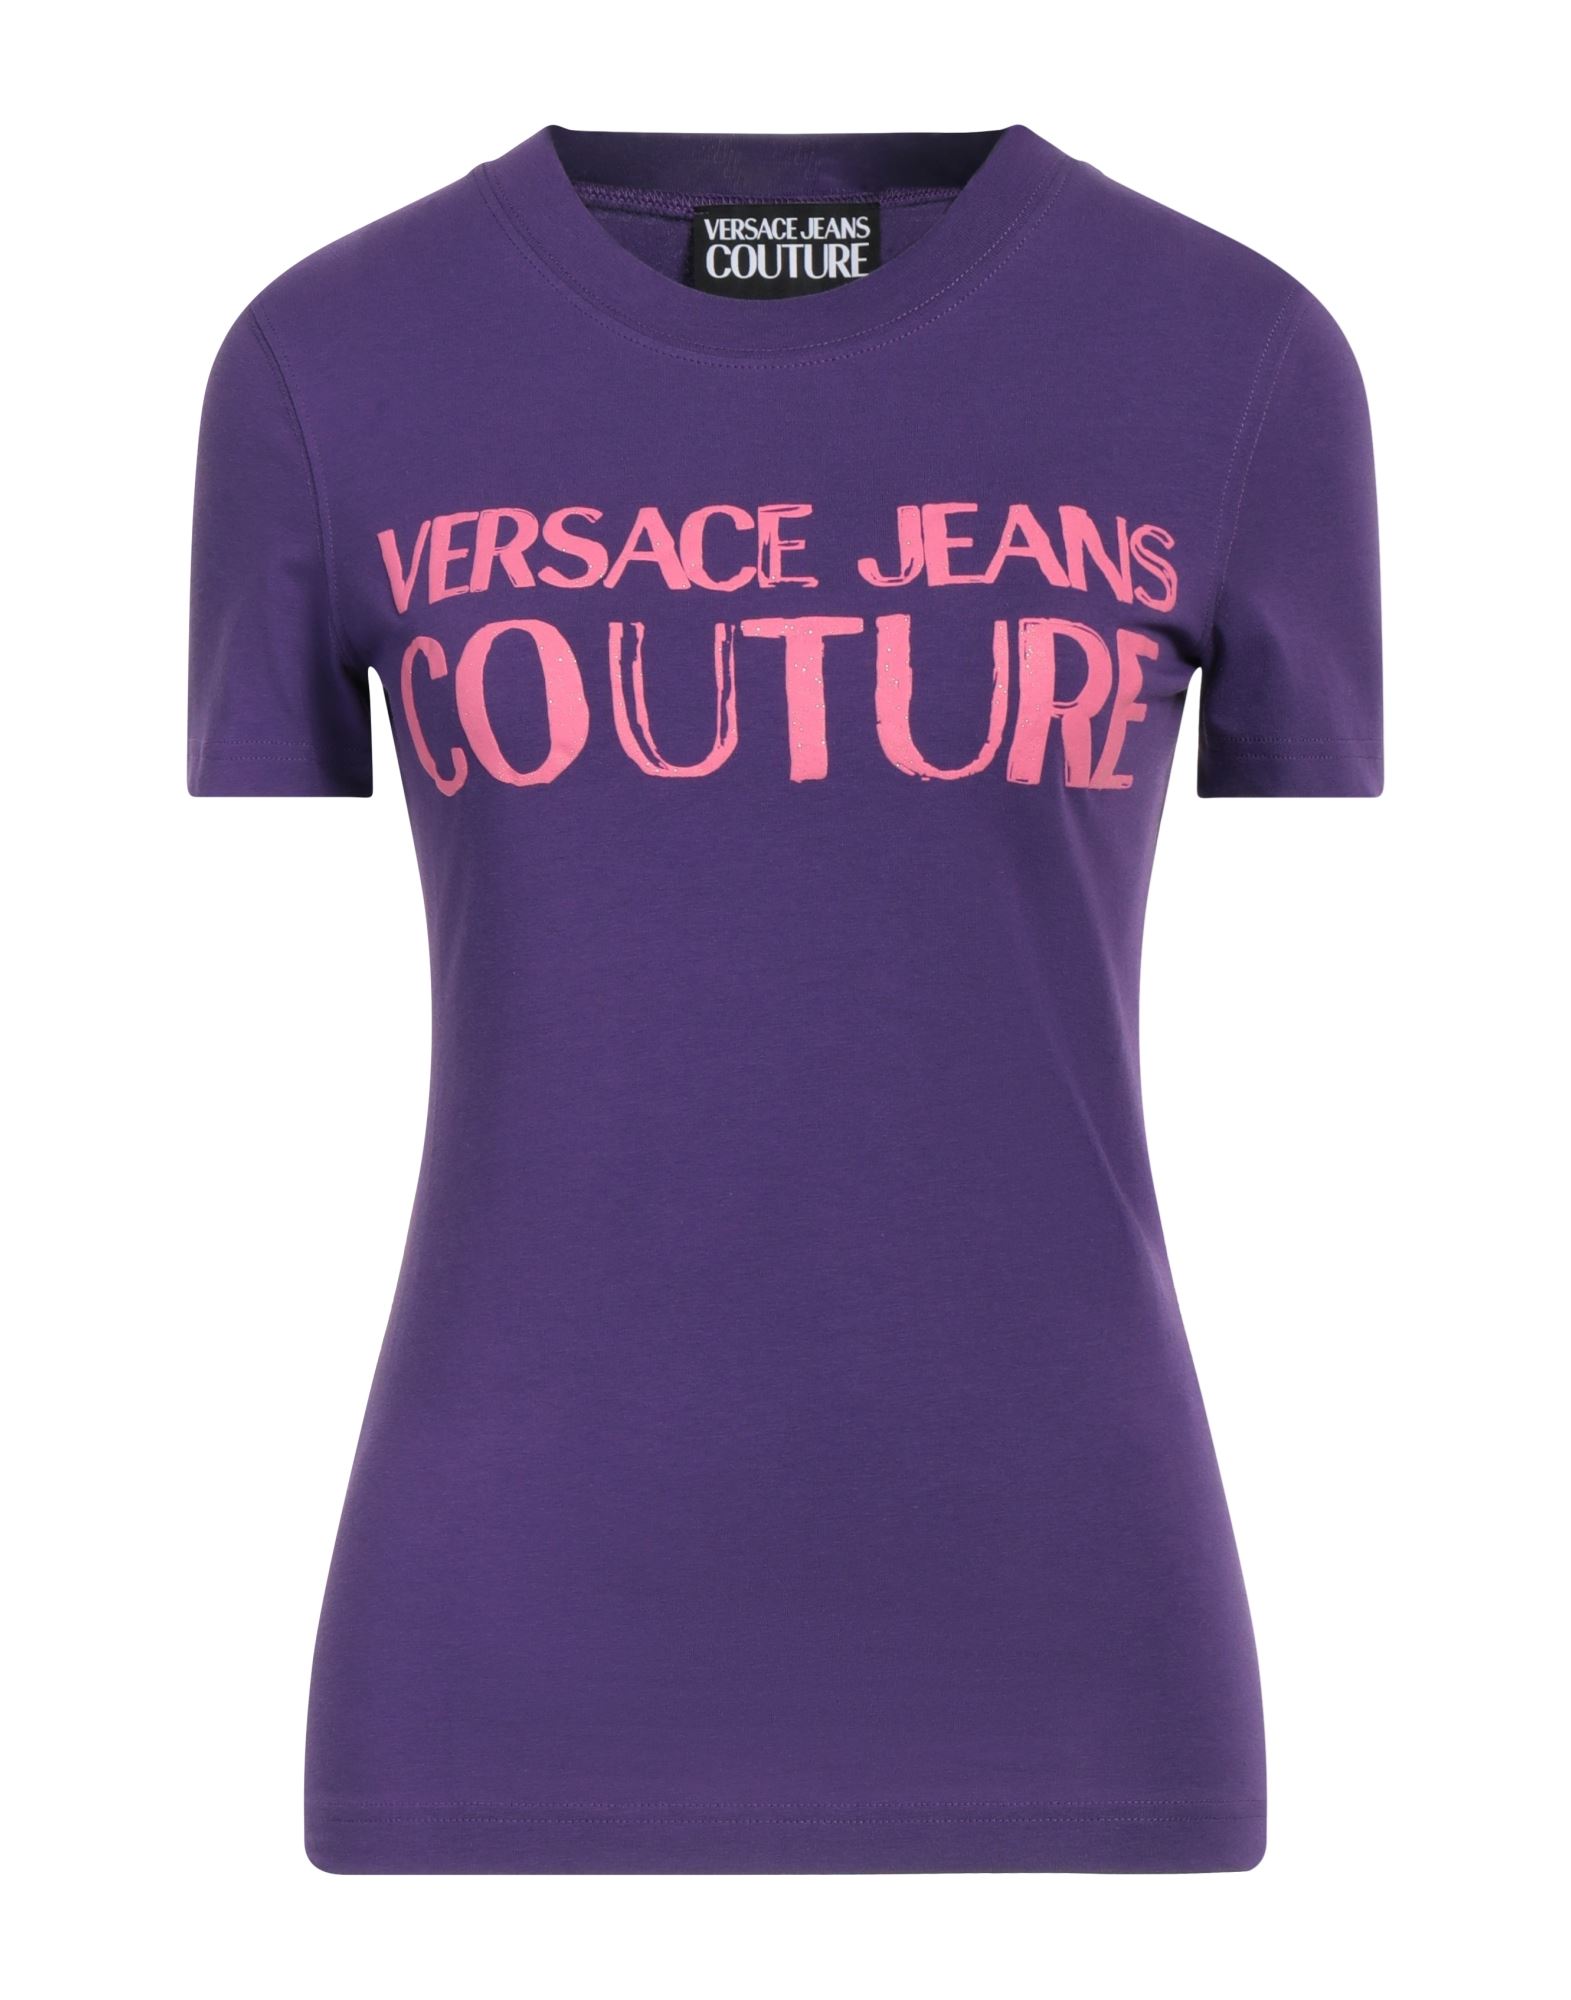 VERSACE JEANS COUTURE T-shirts Damen Violett von VERSACE JEANS COUTURE